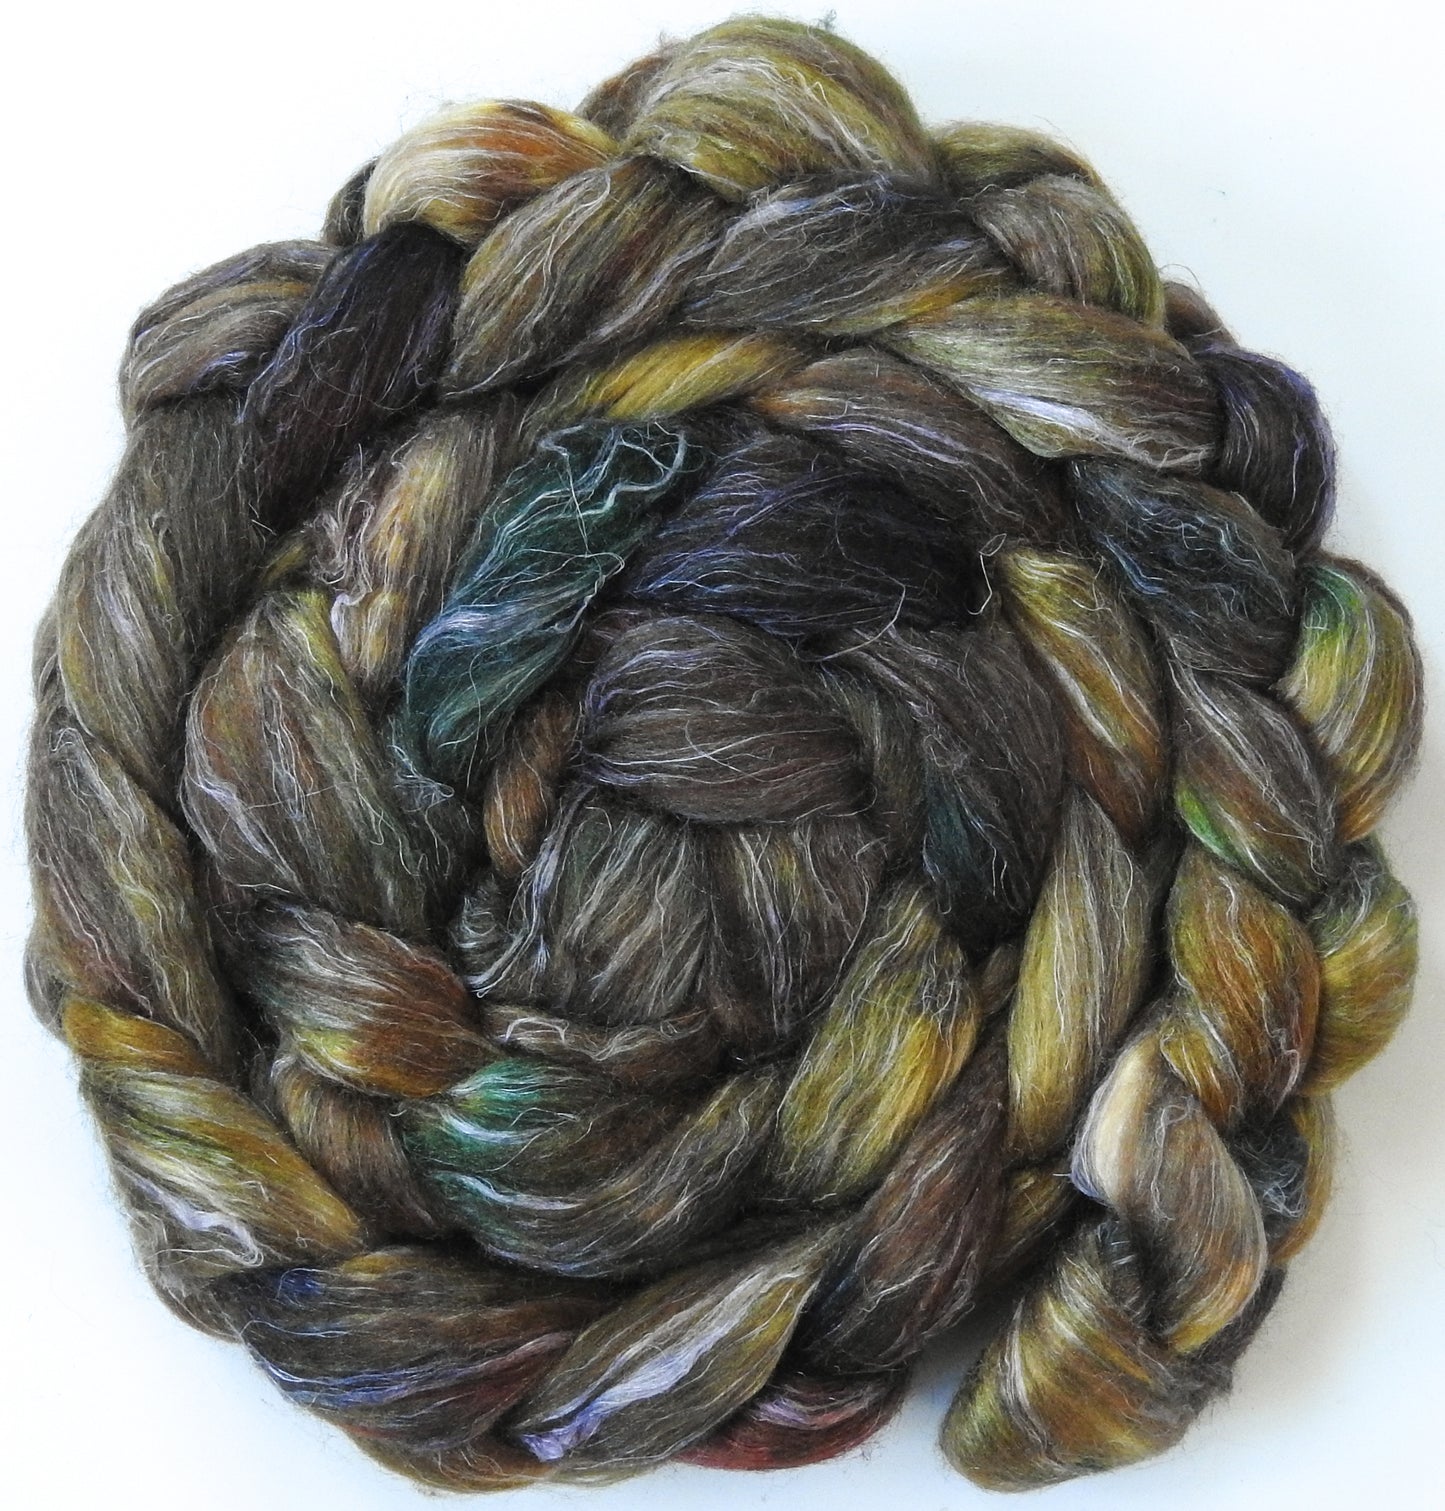 Chestnut (5.8 oz)- Batt in a Braid #3 - Polwarth/ Tussah Silk/ Flax (40/40/20)